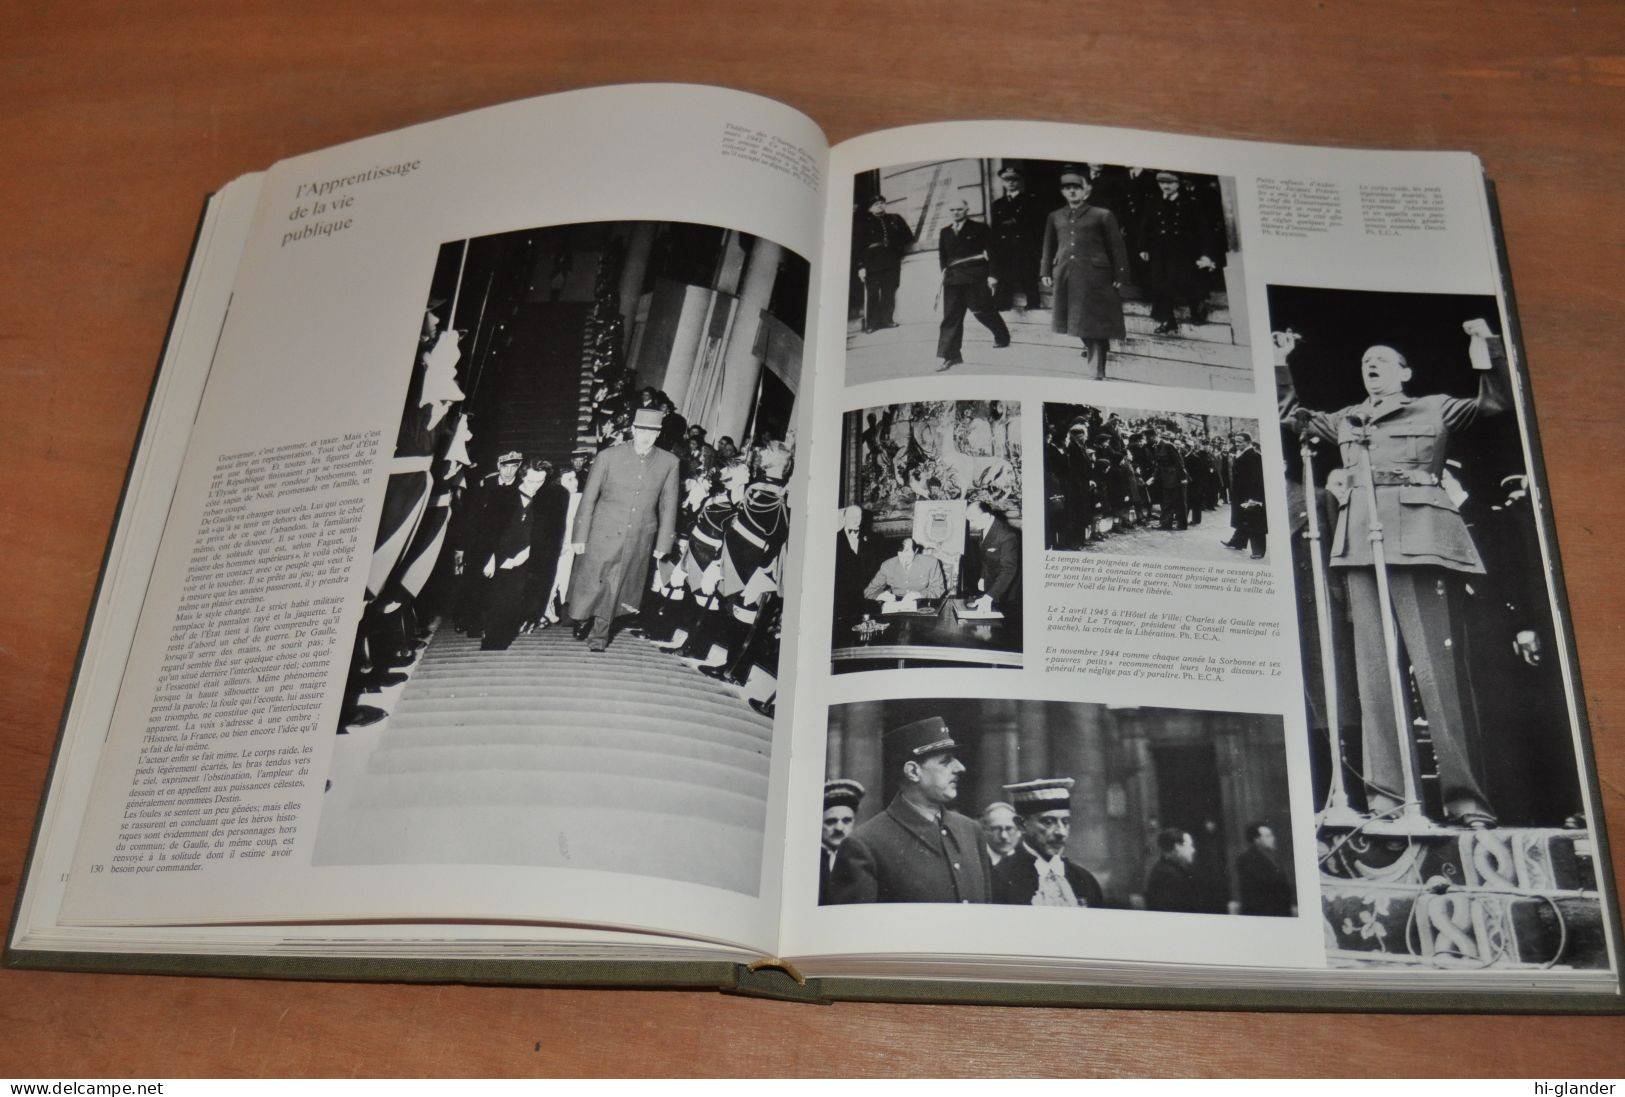 charles de gaulle  1890/1970 beau livre 650 photos